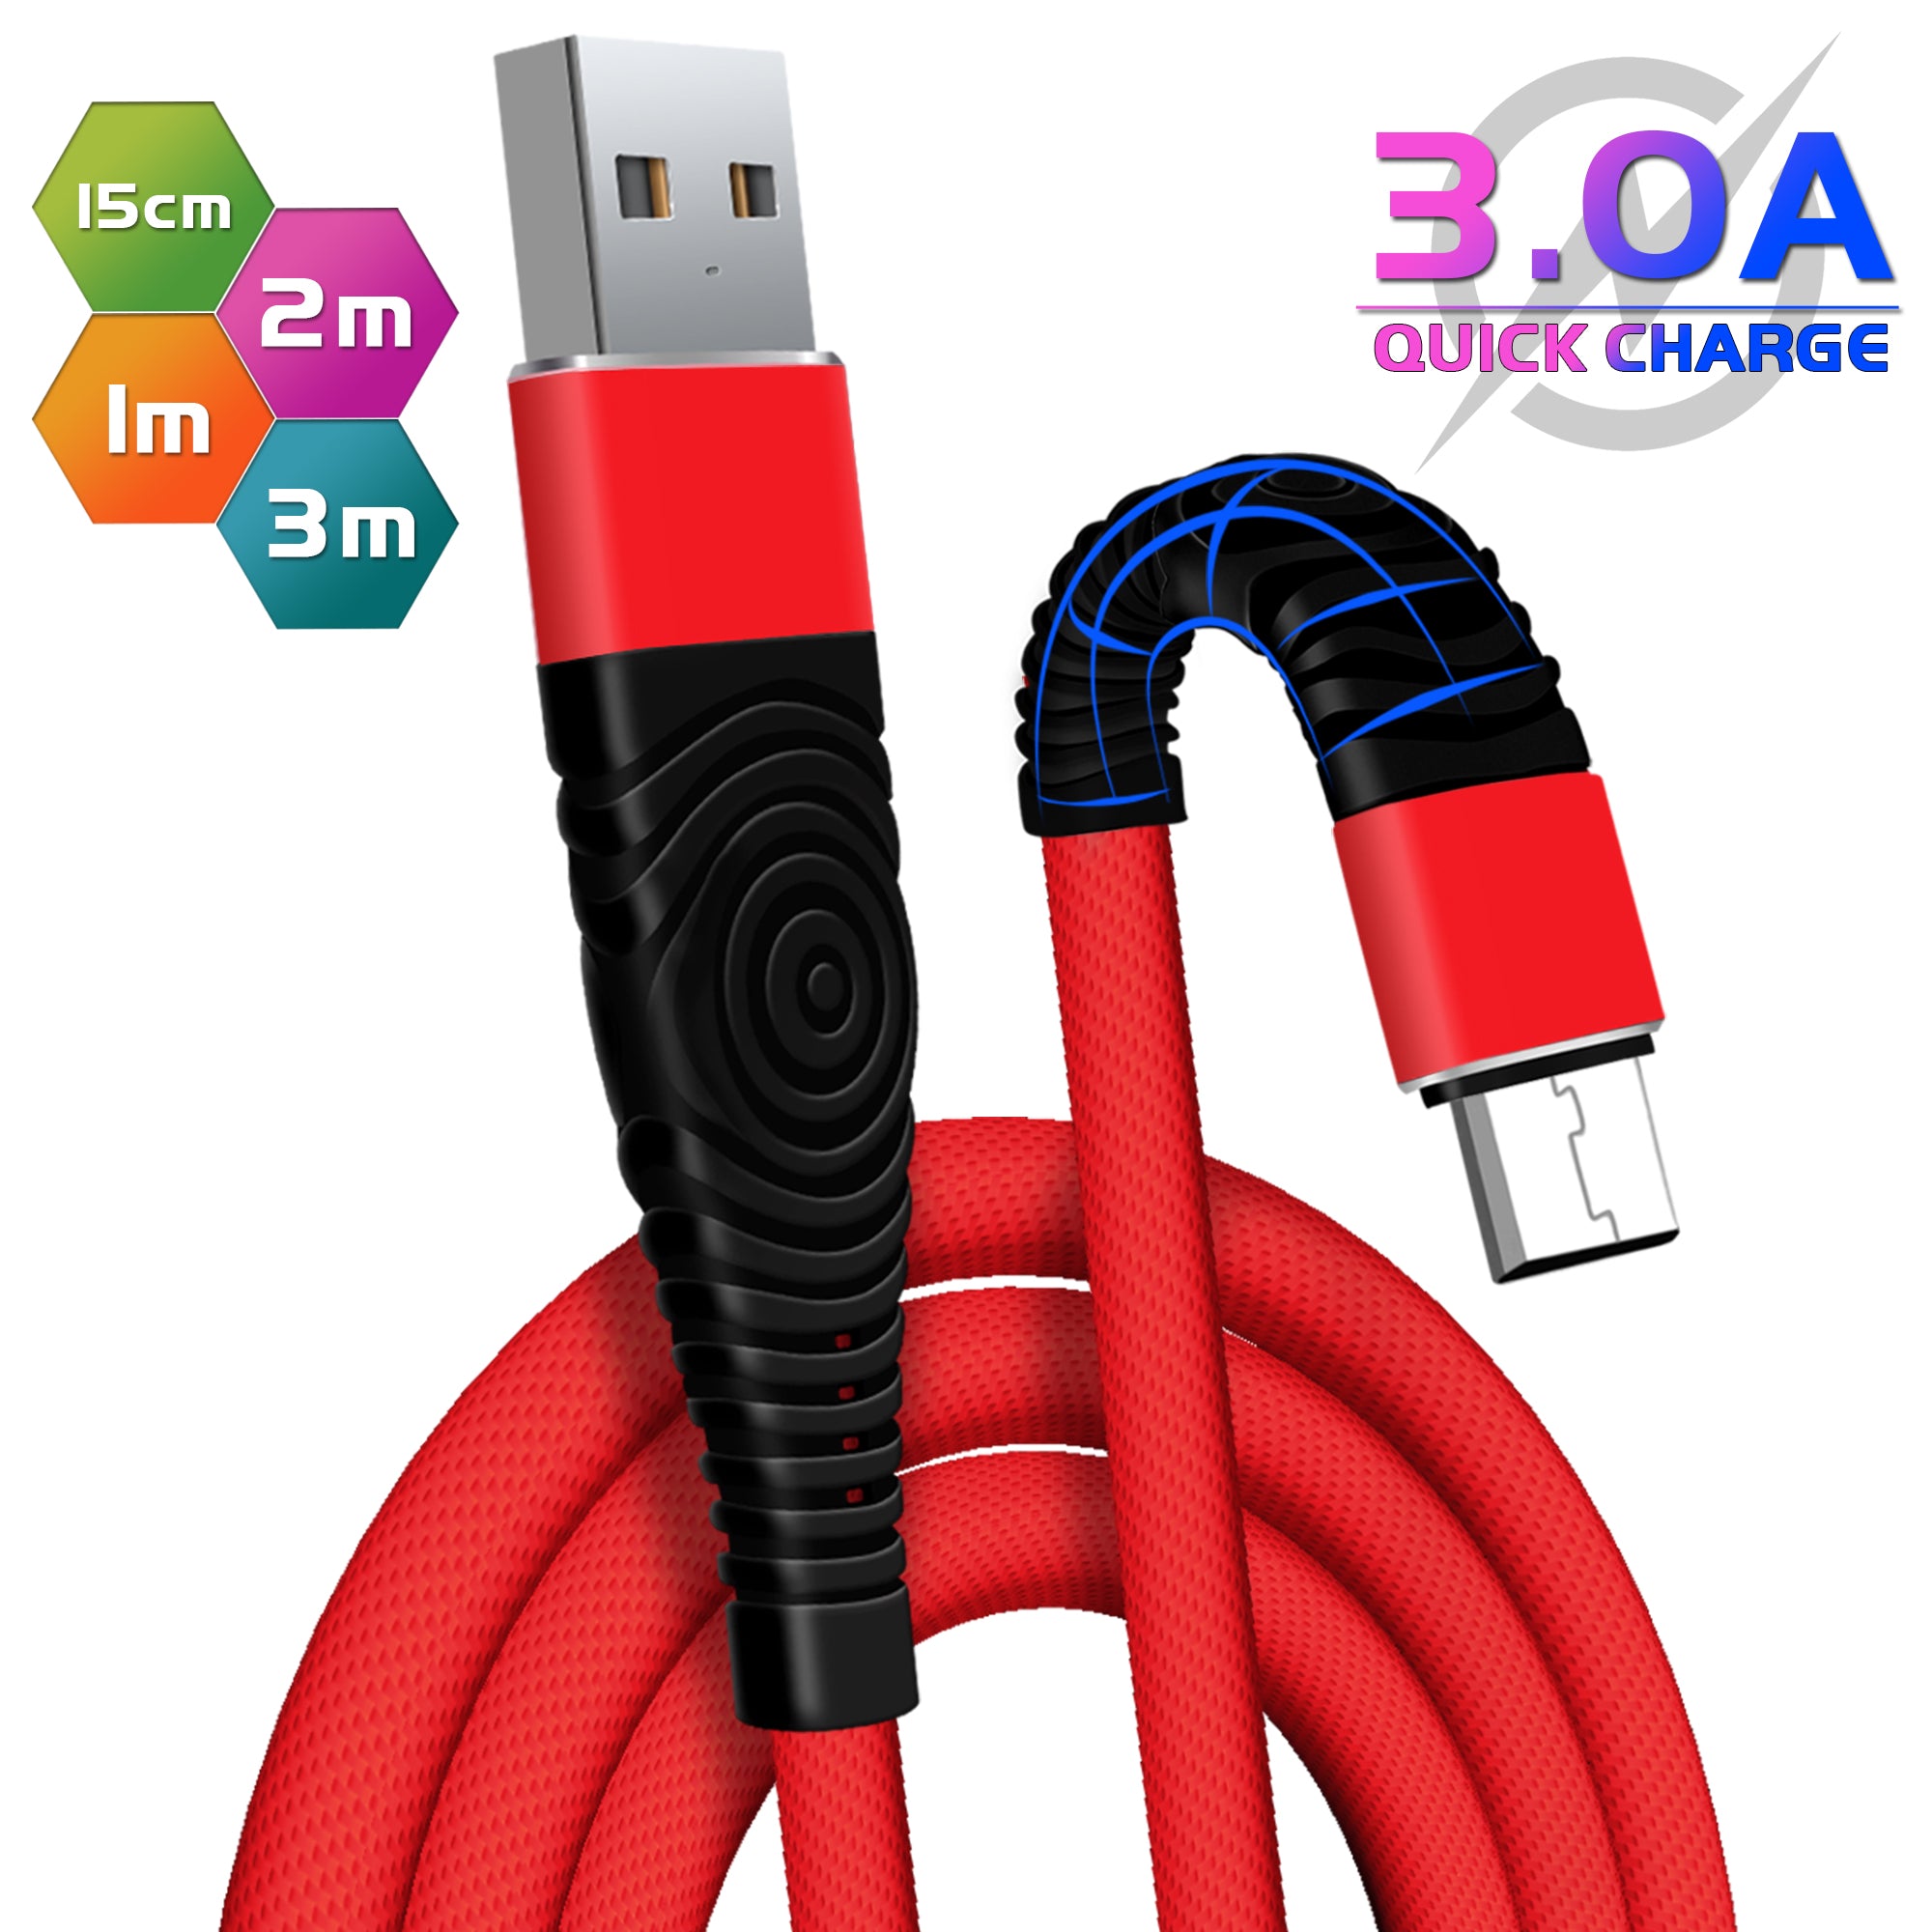 Câble textile chargeur micro usb, 2 m noir rouge EVOLOGY